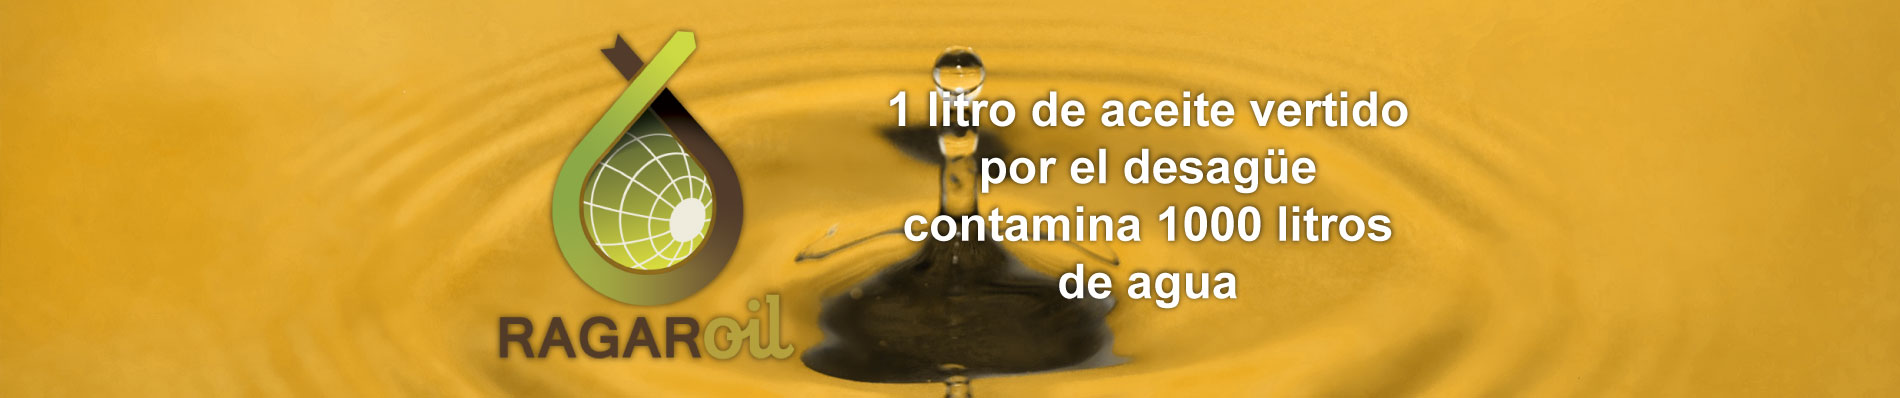 1 litro de aceite vertido por el desagüe contamina 1000 litros de agua